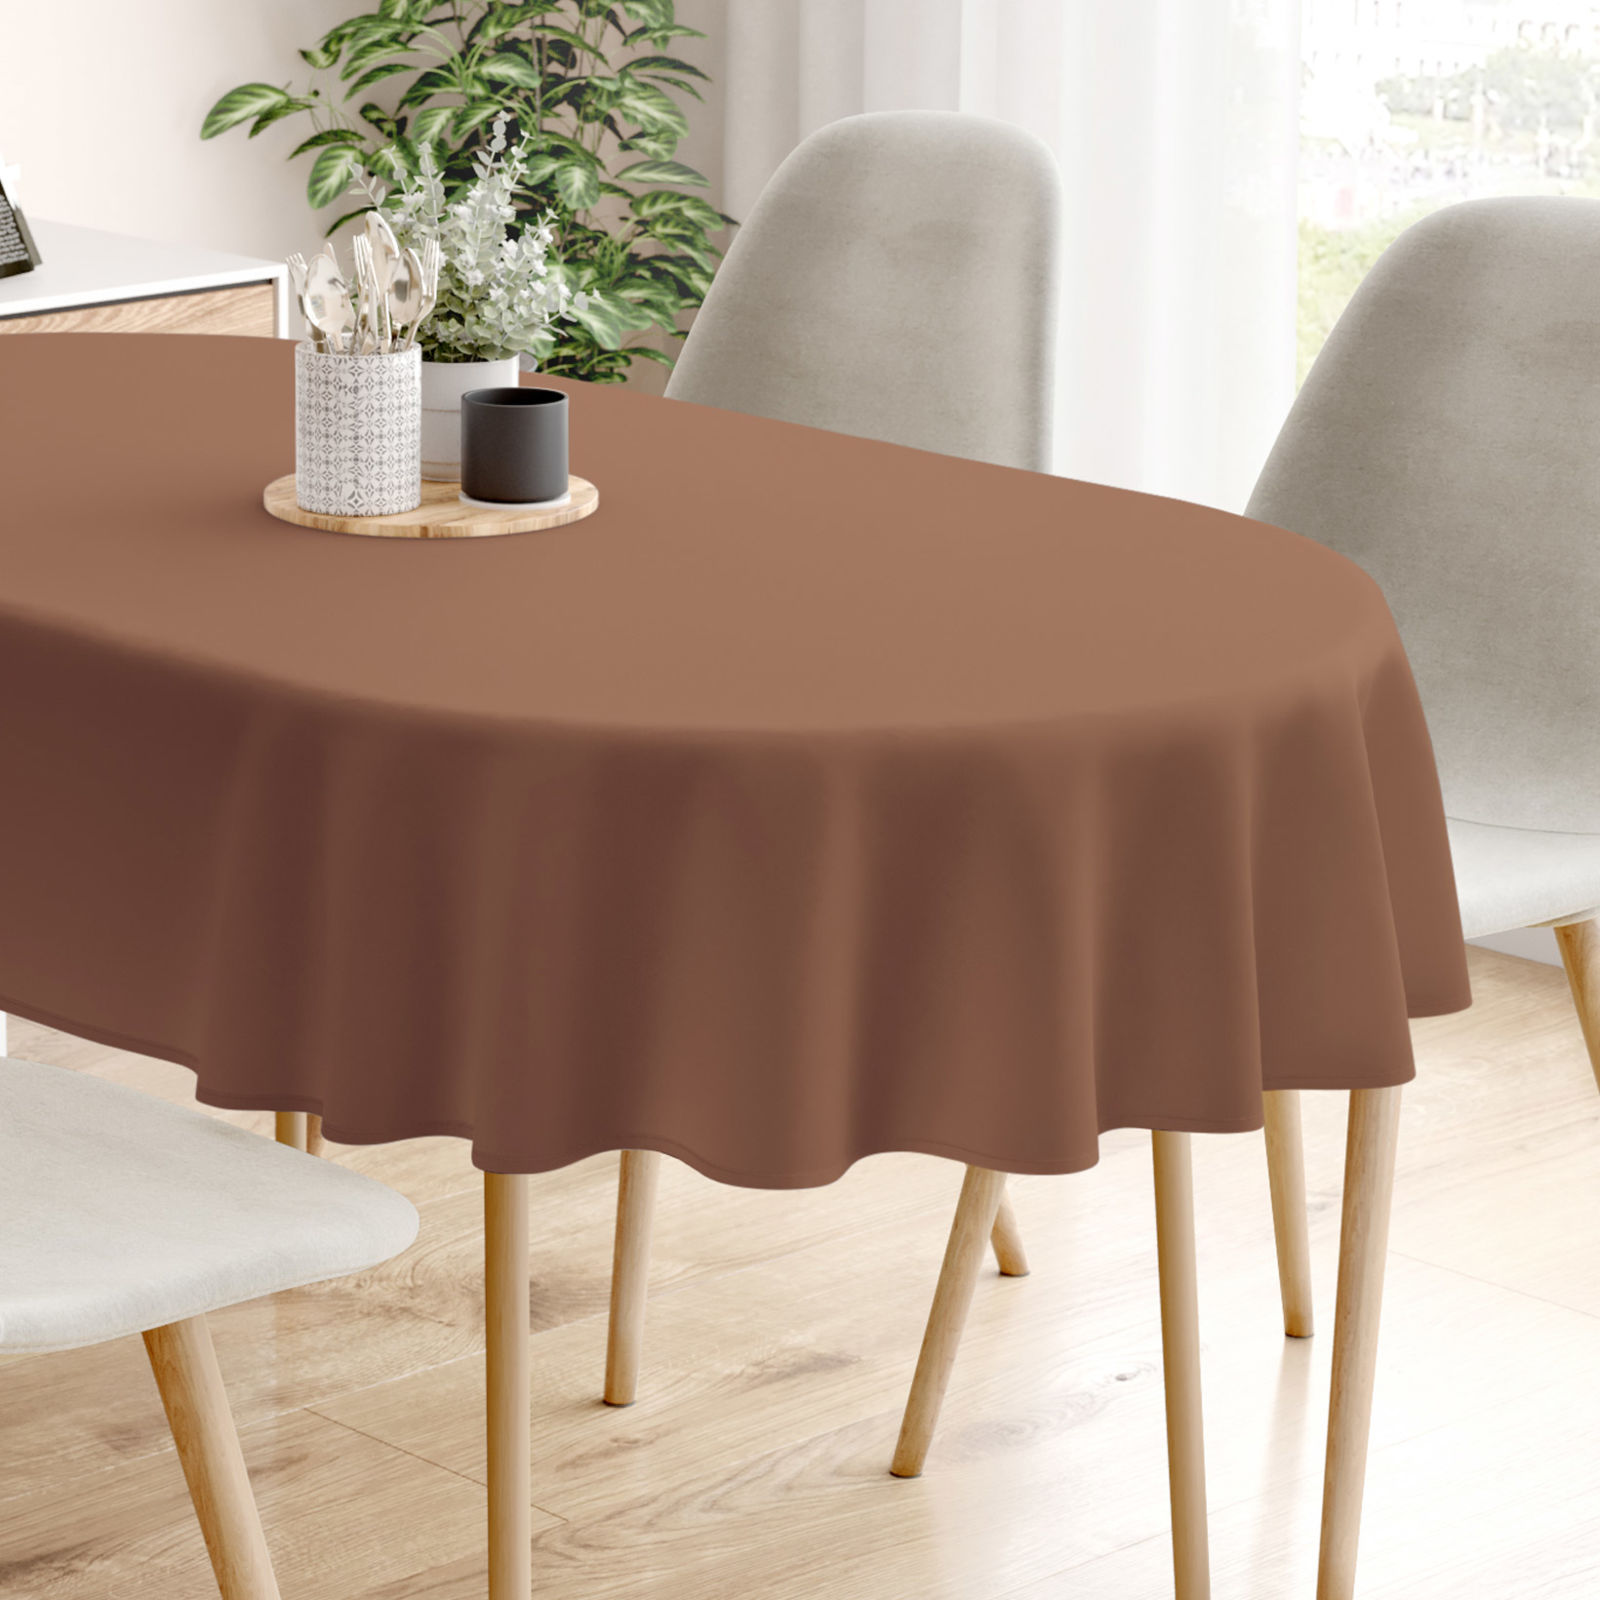 LONETA dekoratív asztalterítő - barna - ovális